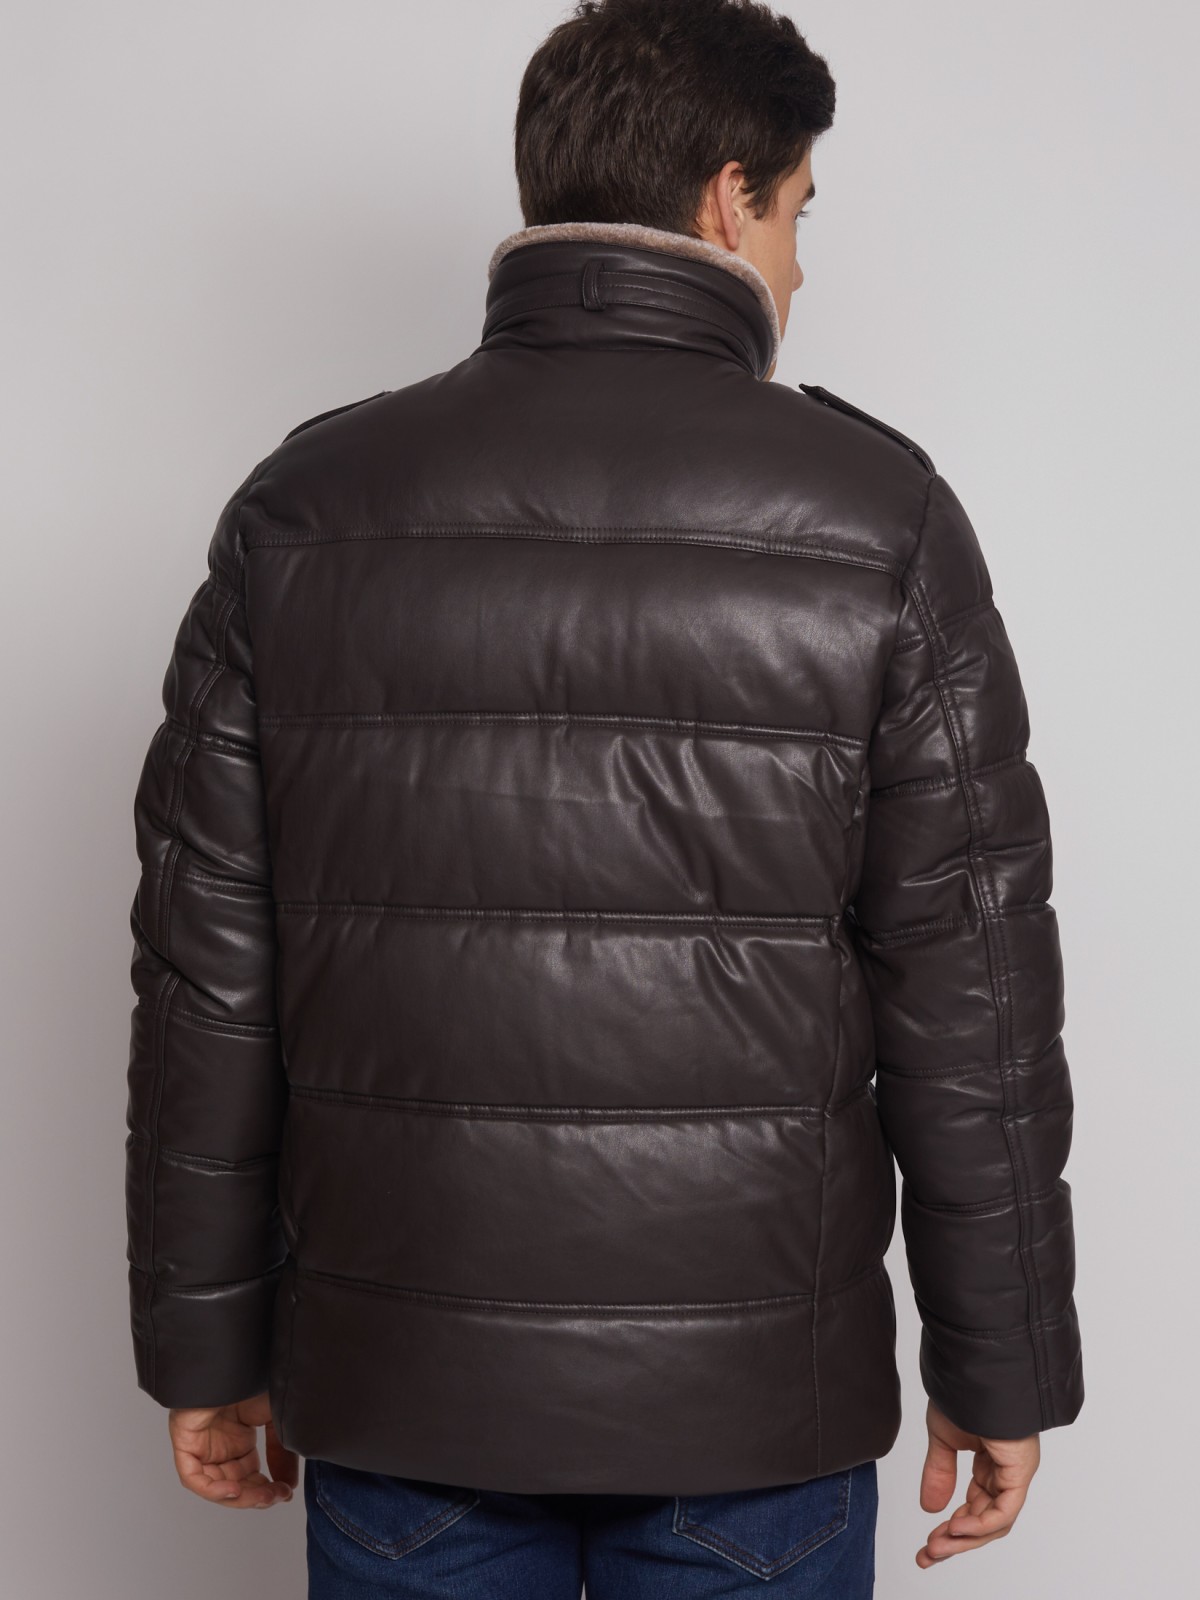 Тёплая куртка из экокожи с высоким воротником zolla 012425102184, цвет коричневый, размер M - фото 6